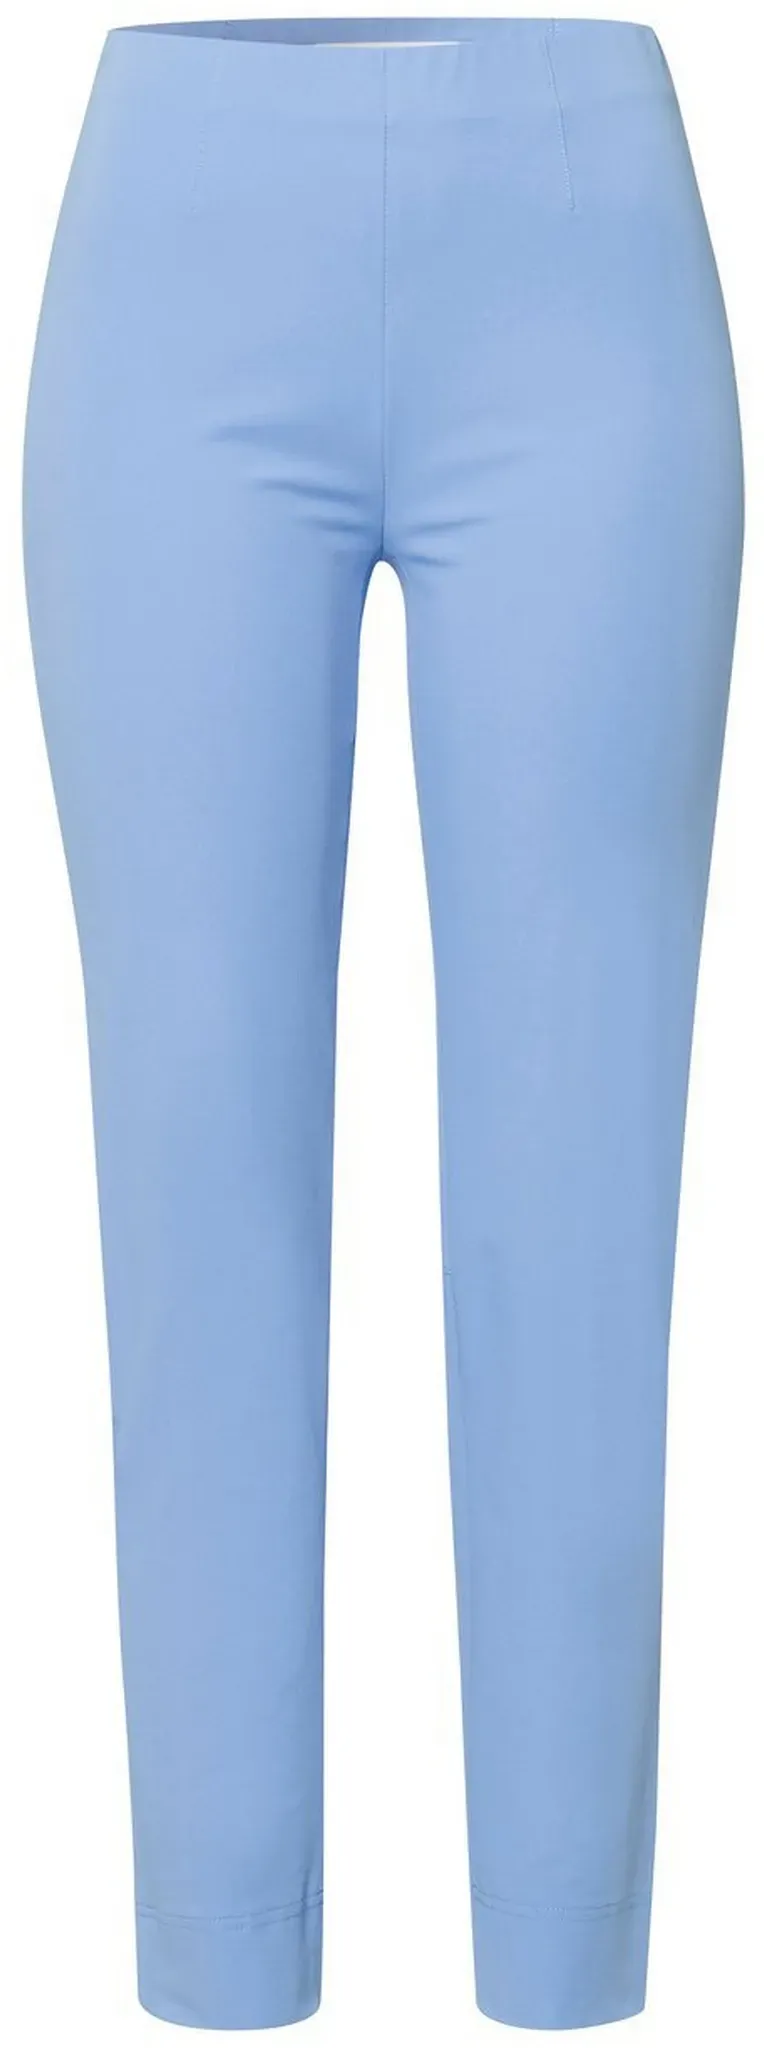 Le pantalon longueur chevilles modèle Penny  Raffaello Rossi bleu